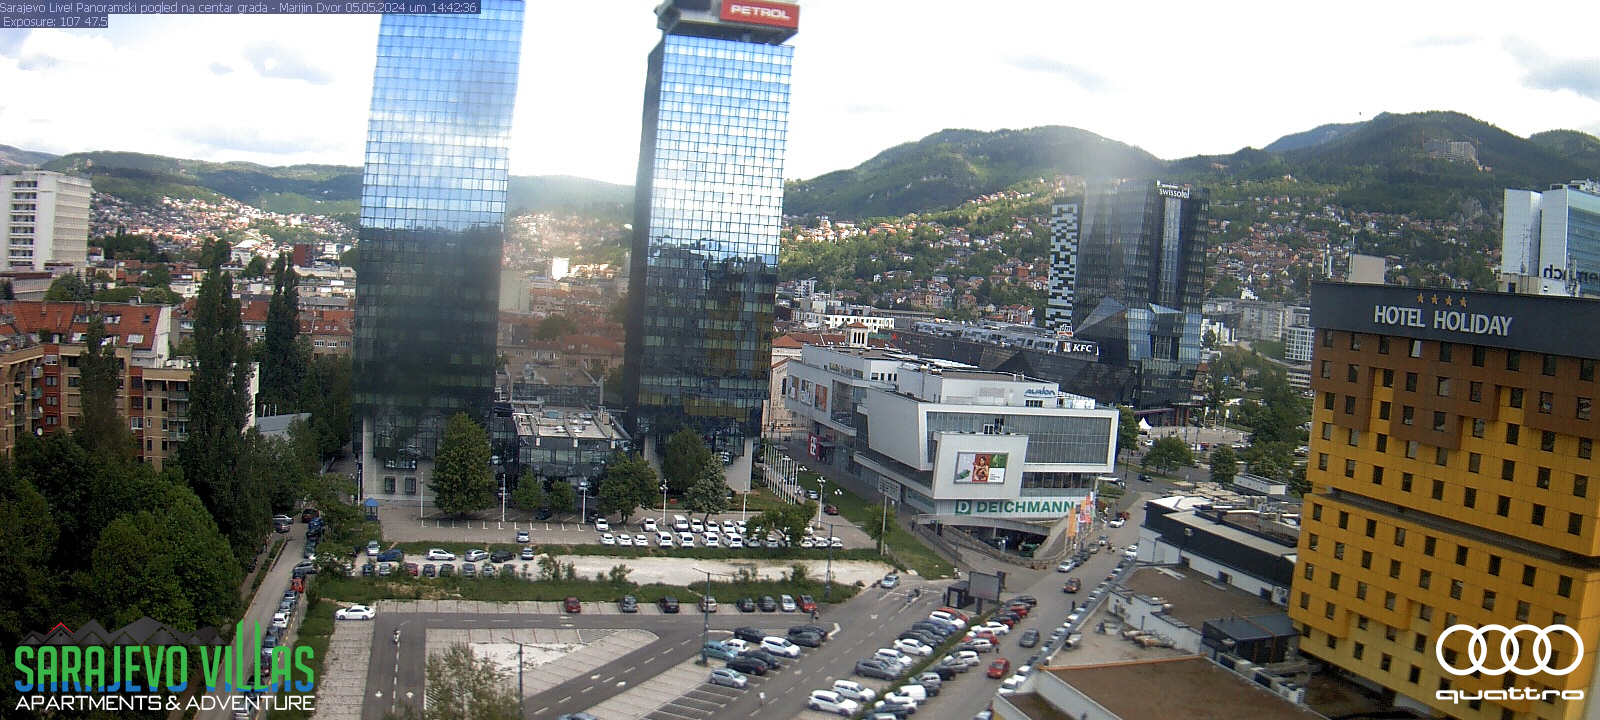 Hauptstadt von Bosnien und Herzegowina.